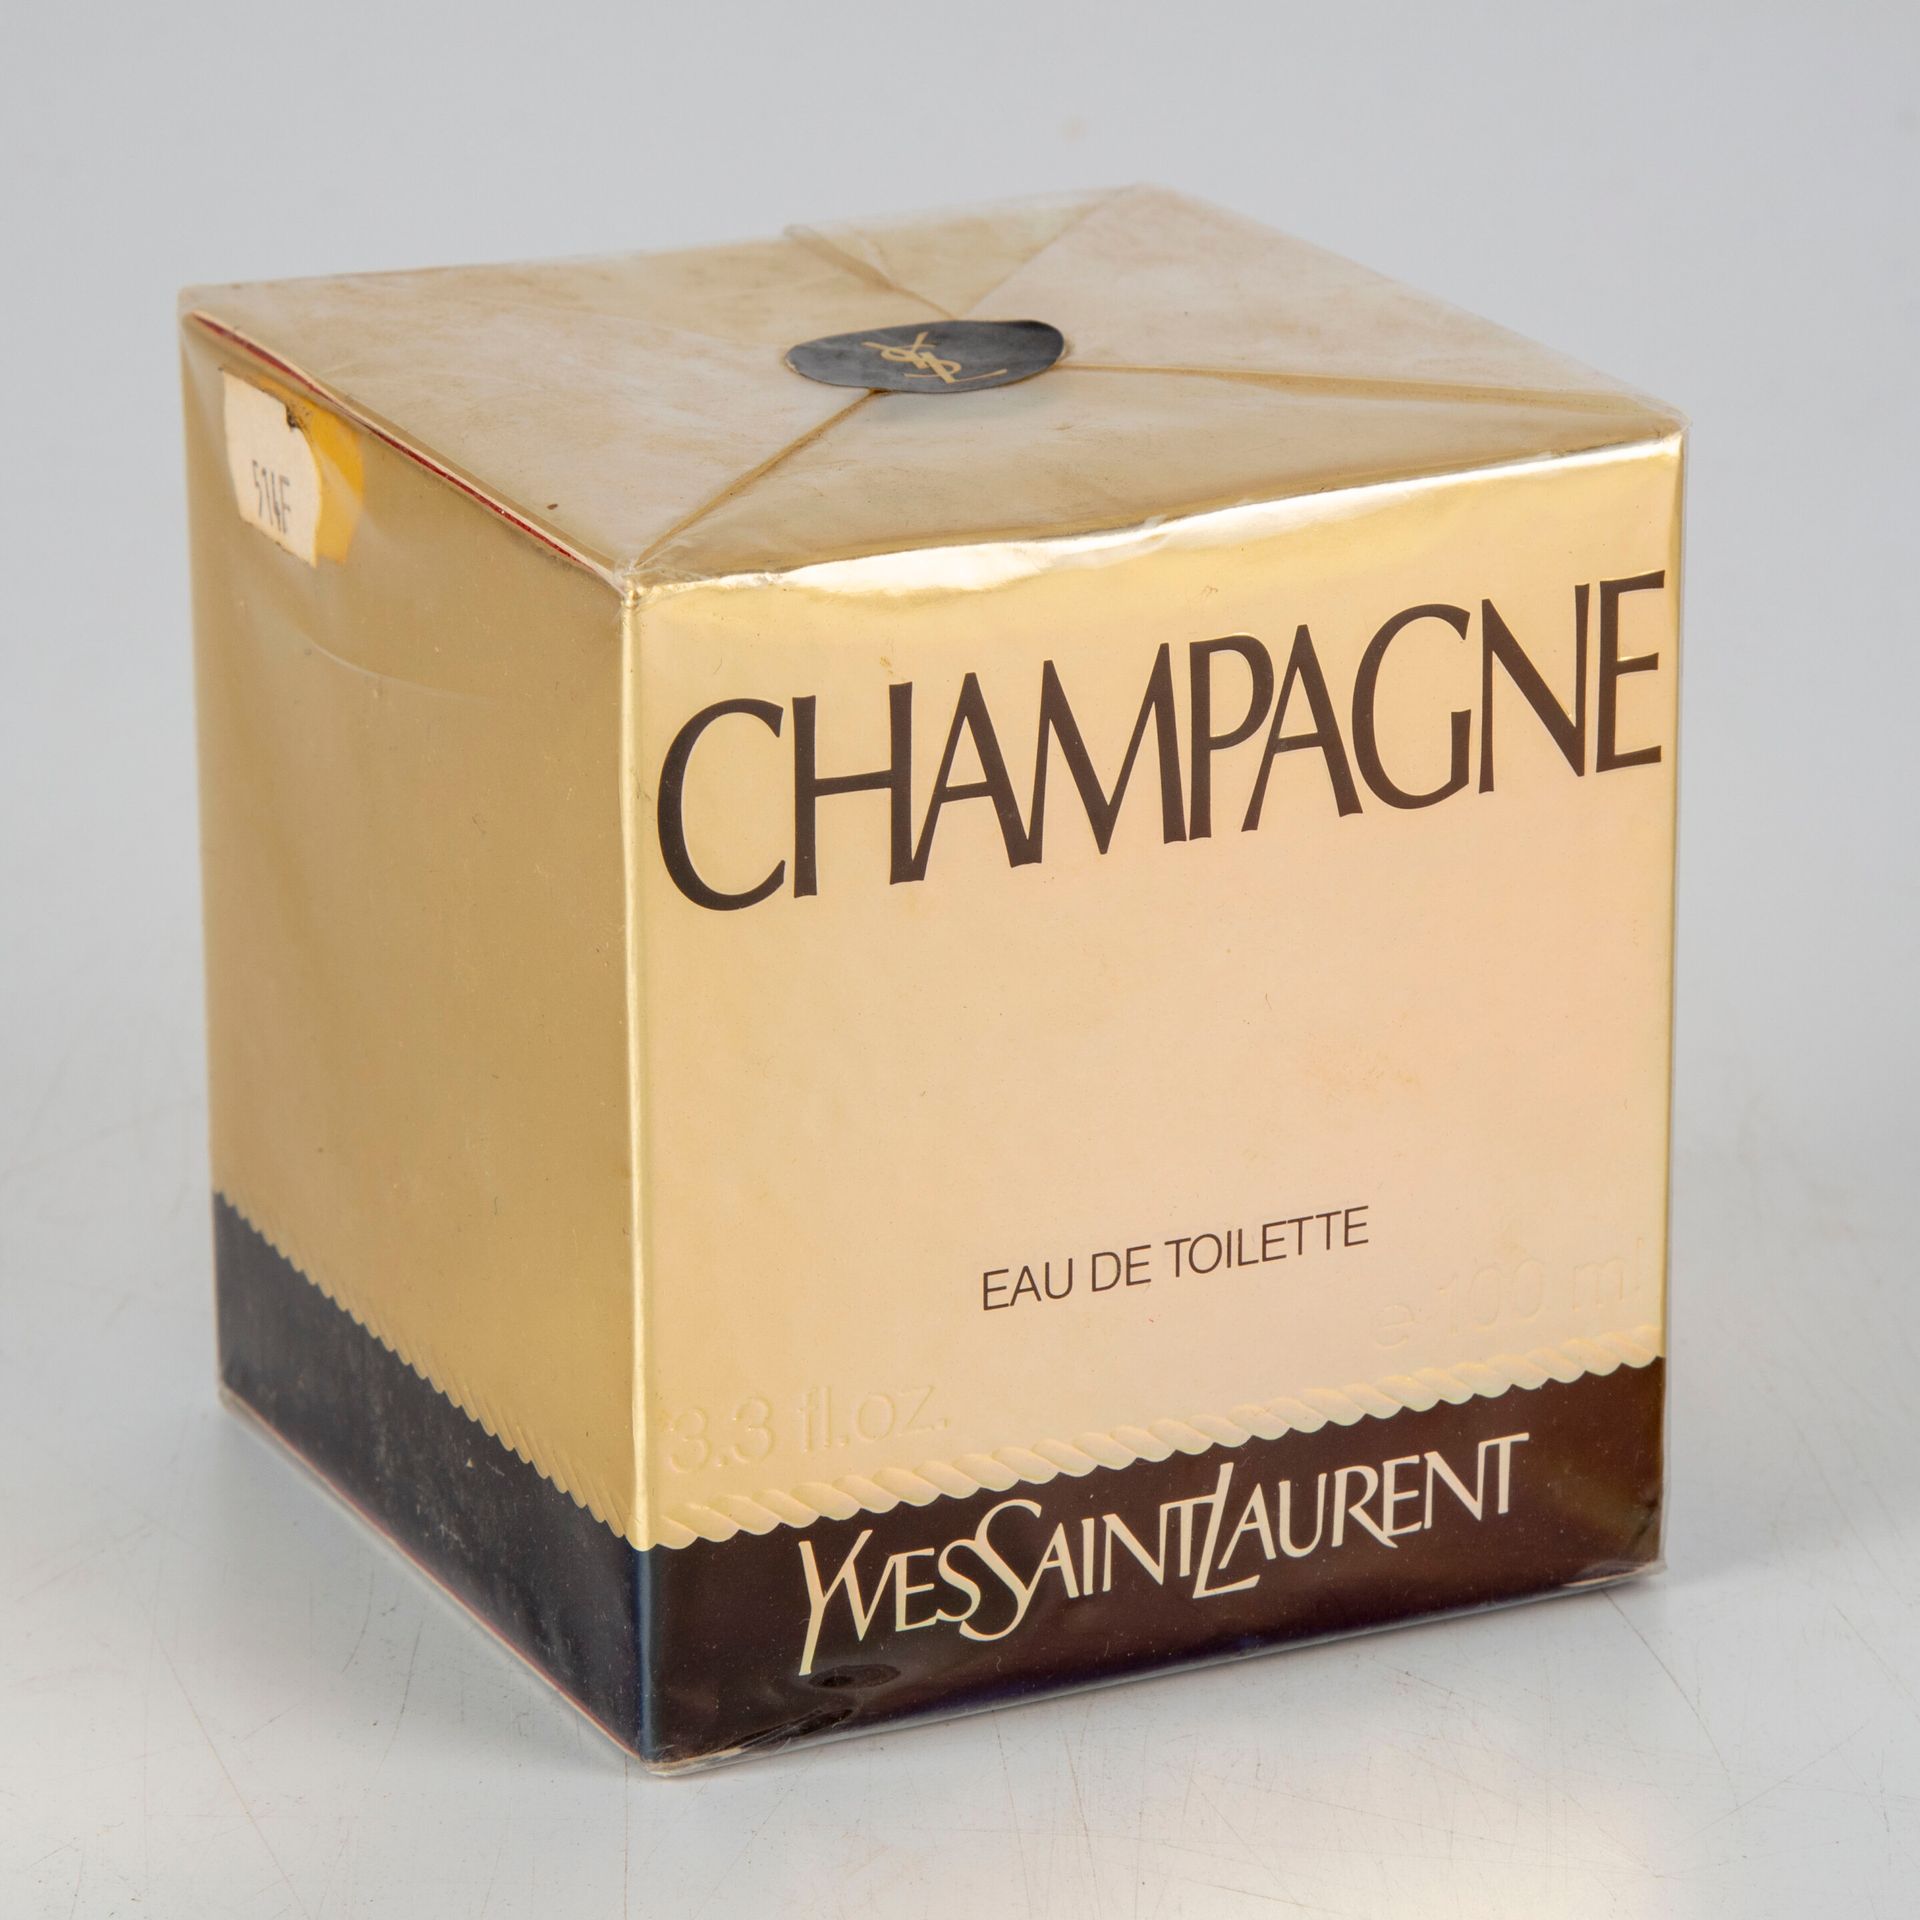 Null Casa di Yves Saint Laurent - Parigi

Eau de toilette Champagne 100ml 

cond&hellip;